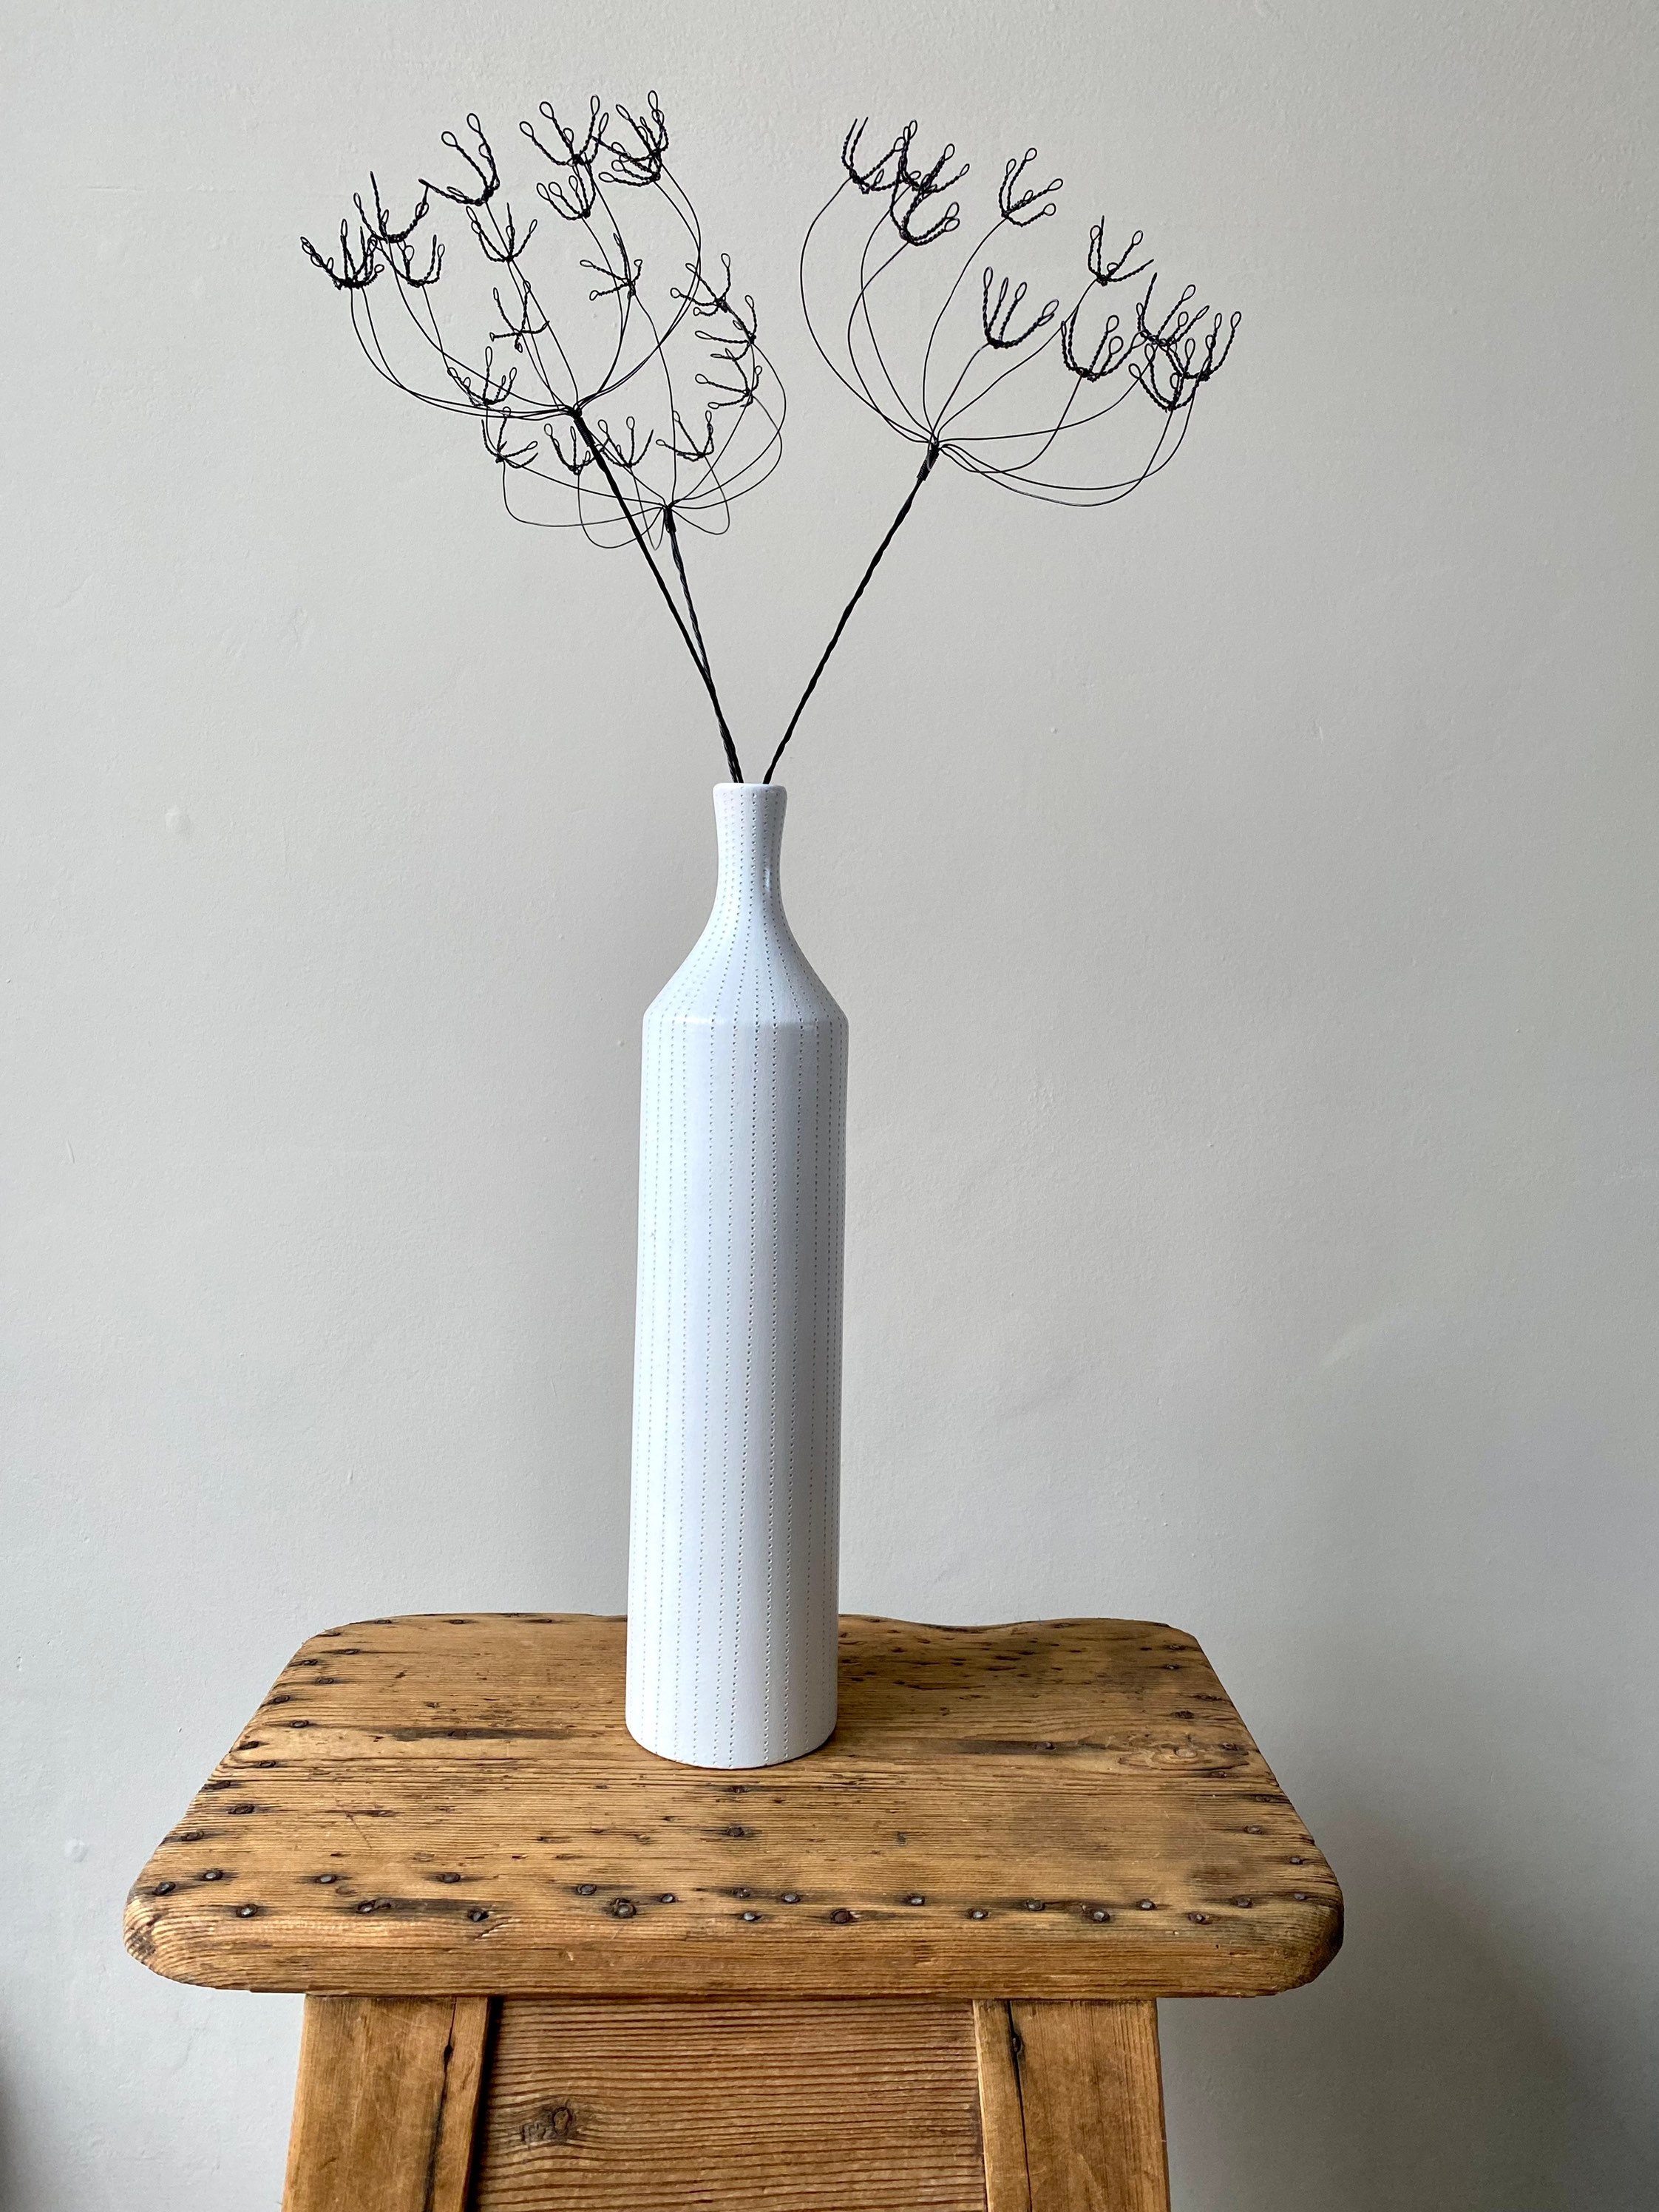 Handmade Wire Allium-wire Flower-allium Sculpture-contemporary Handcrafted  everlasting Floral Gift-housewarming Gift-summer Blooms 